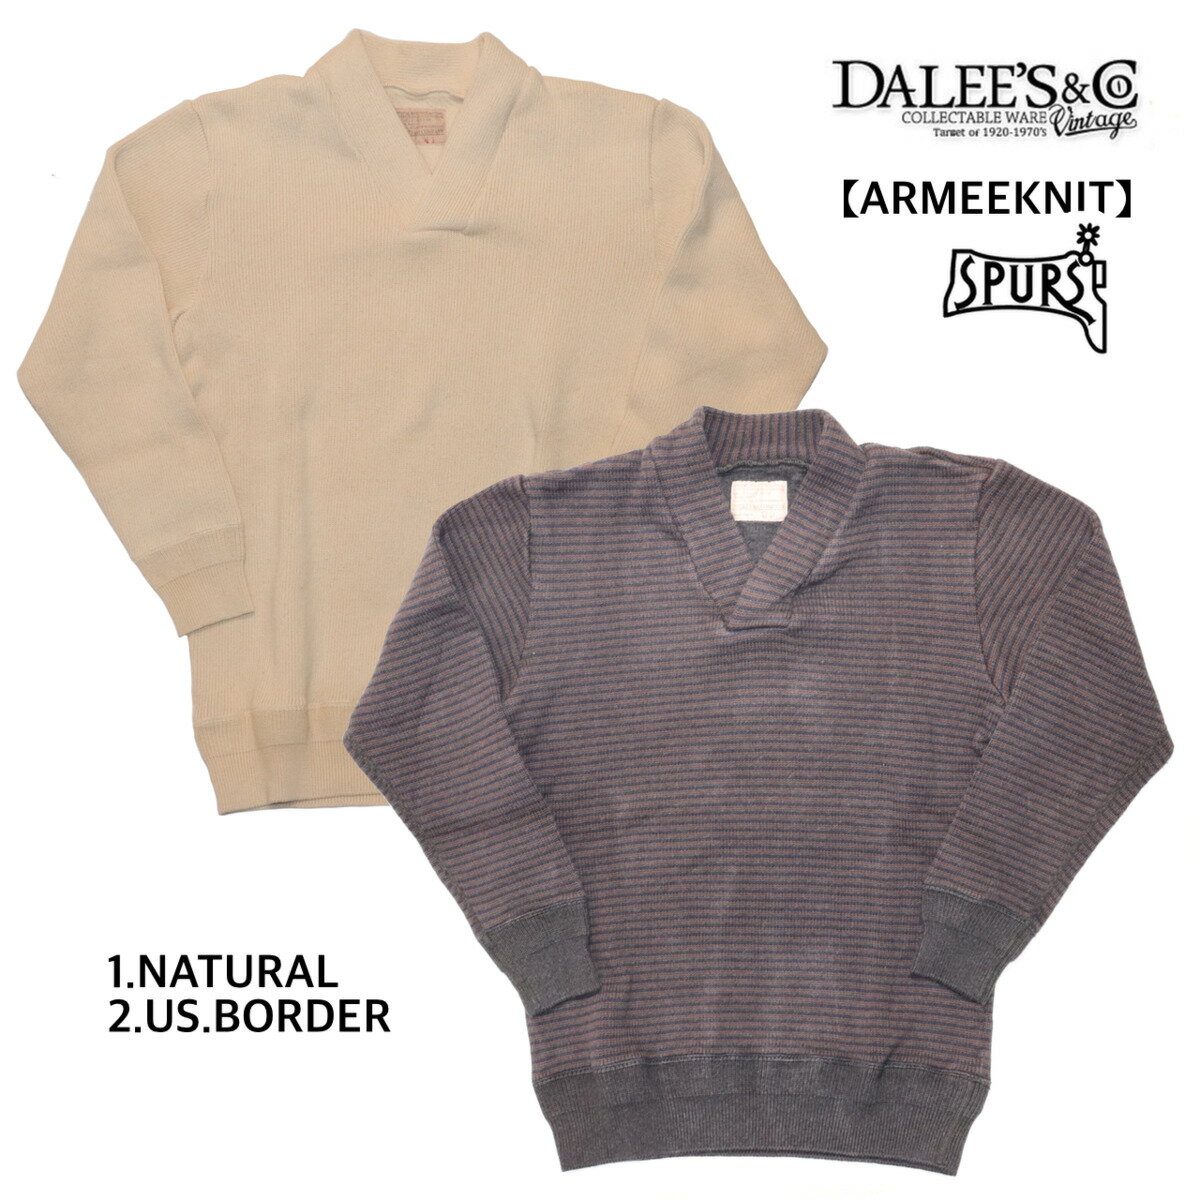 DALEE'S&CO (ダリーズ＆コー) 10s Antique Sweat Shirt  セーター スウェット コットン ニット アーミー フランス軍 ミリタリー アメカジ メンズ 日本製 送料無料